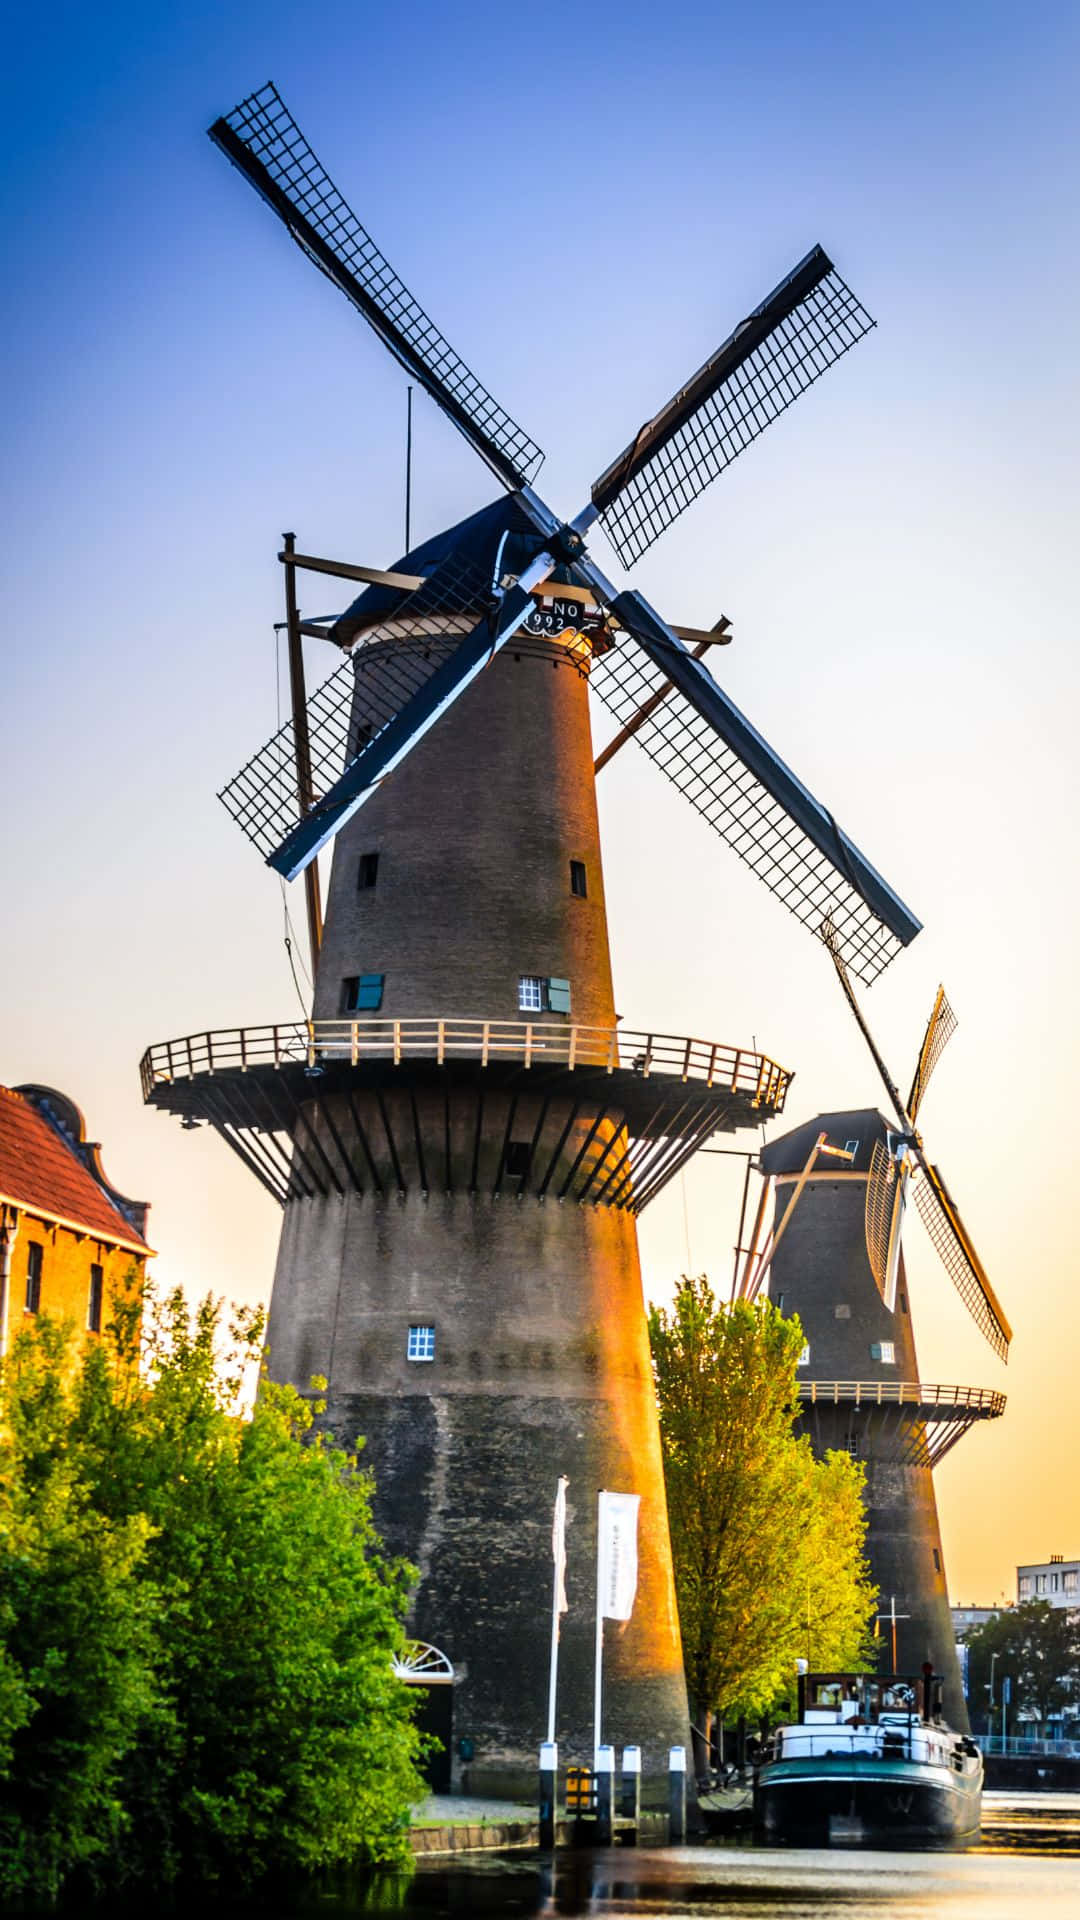 Schiedam Windmillsat Sunset Wallpaper